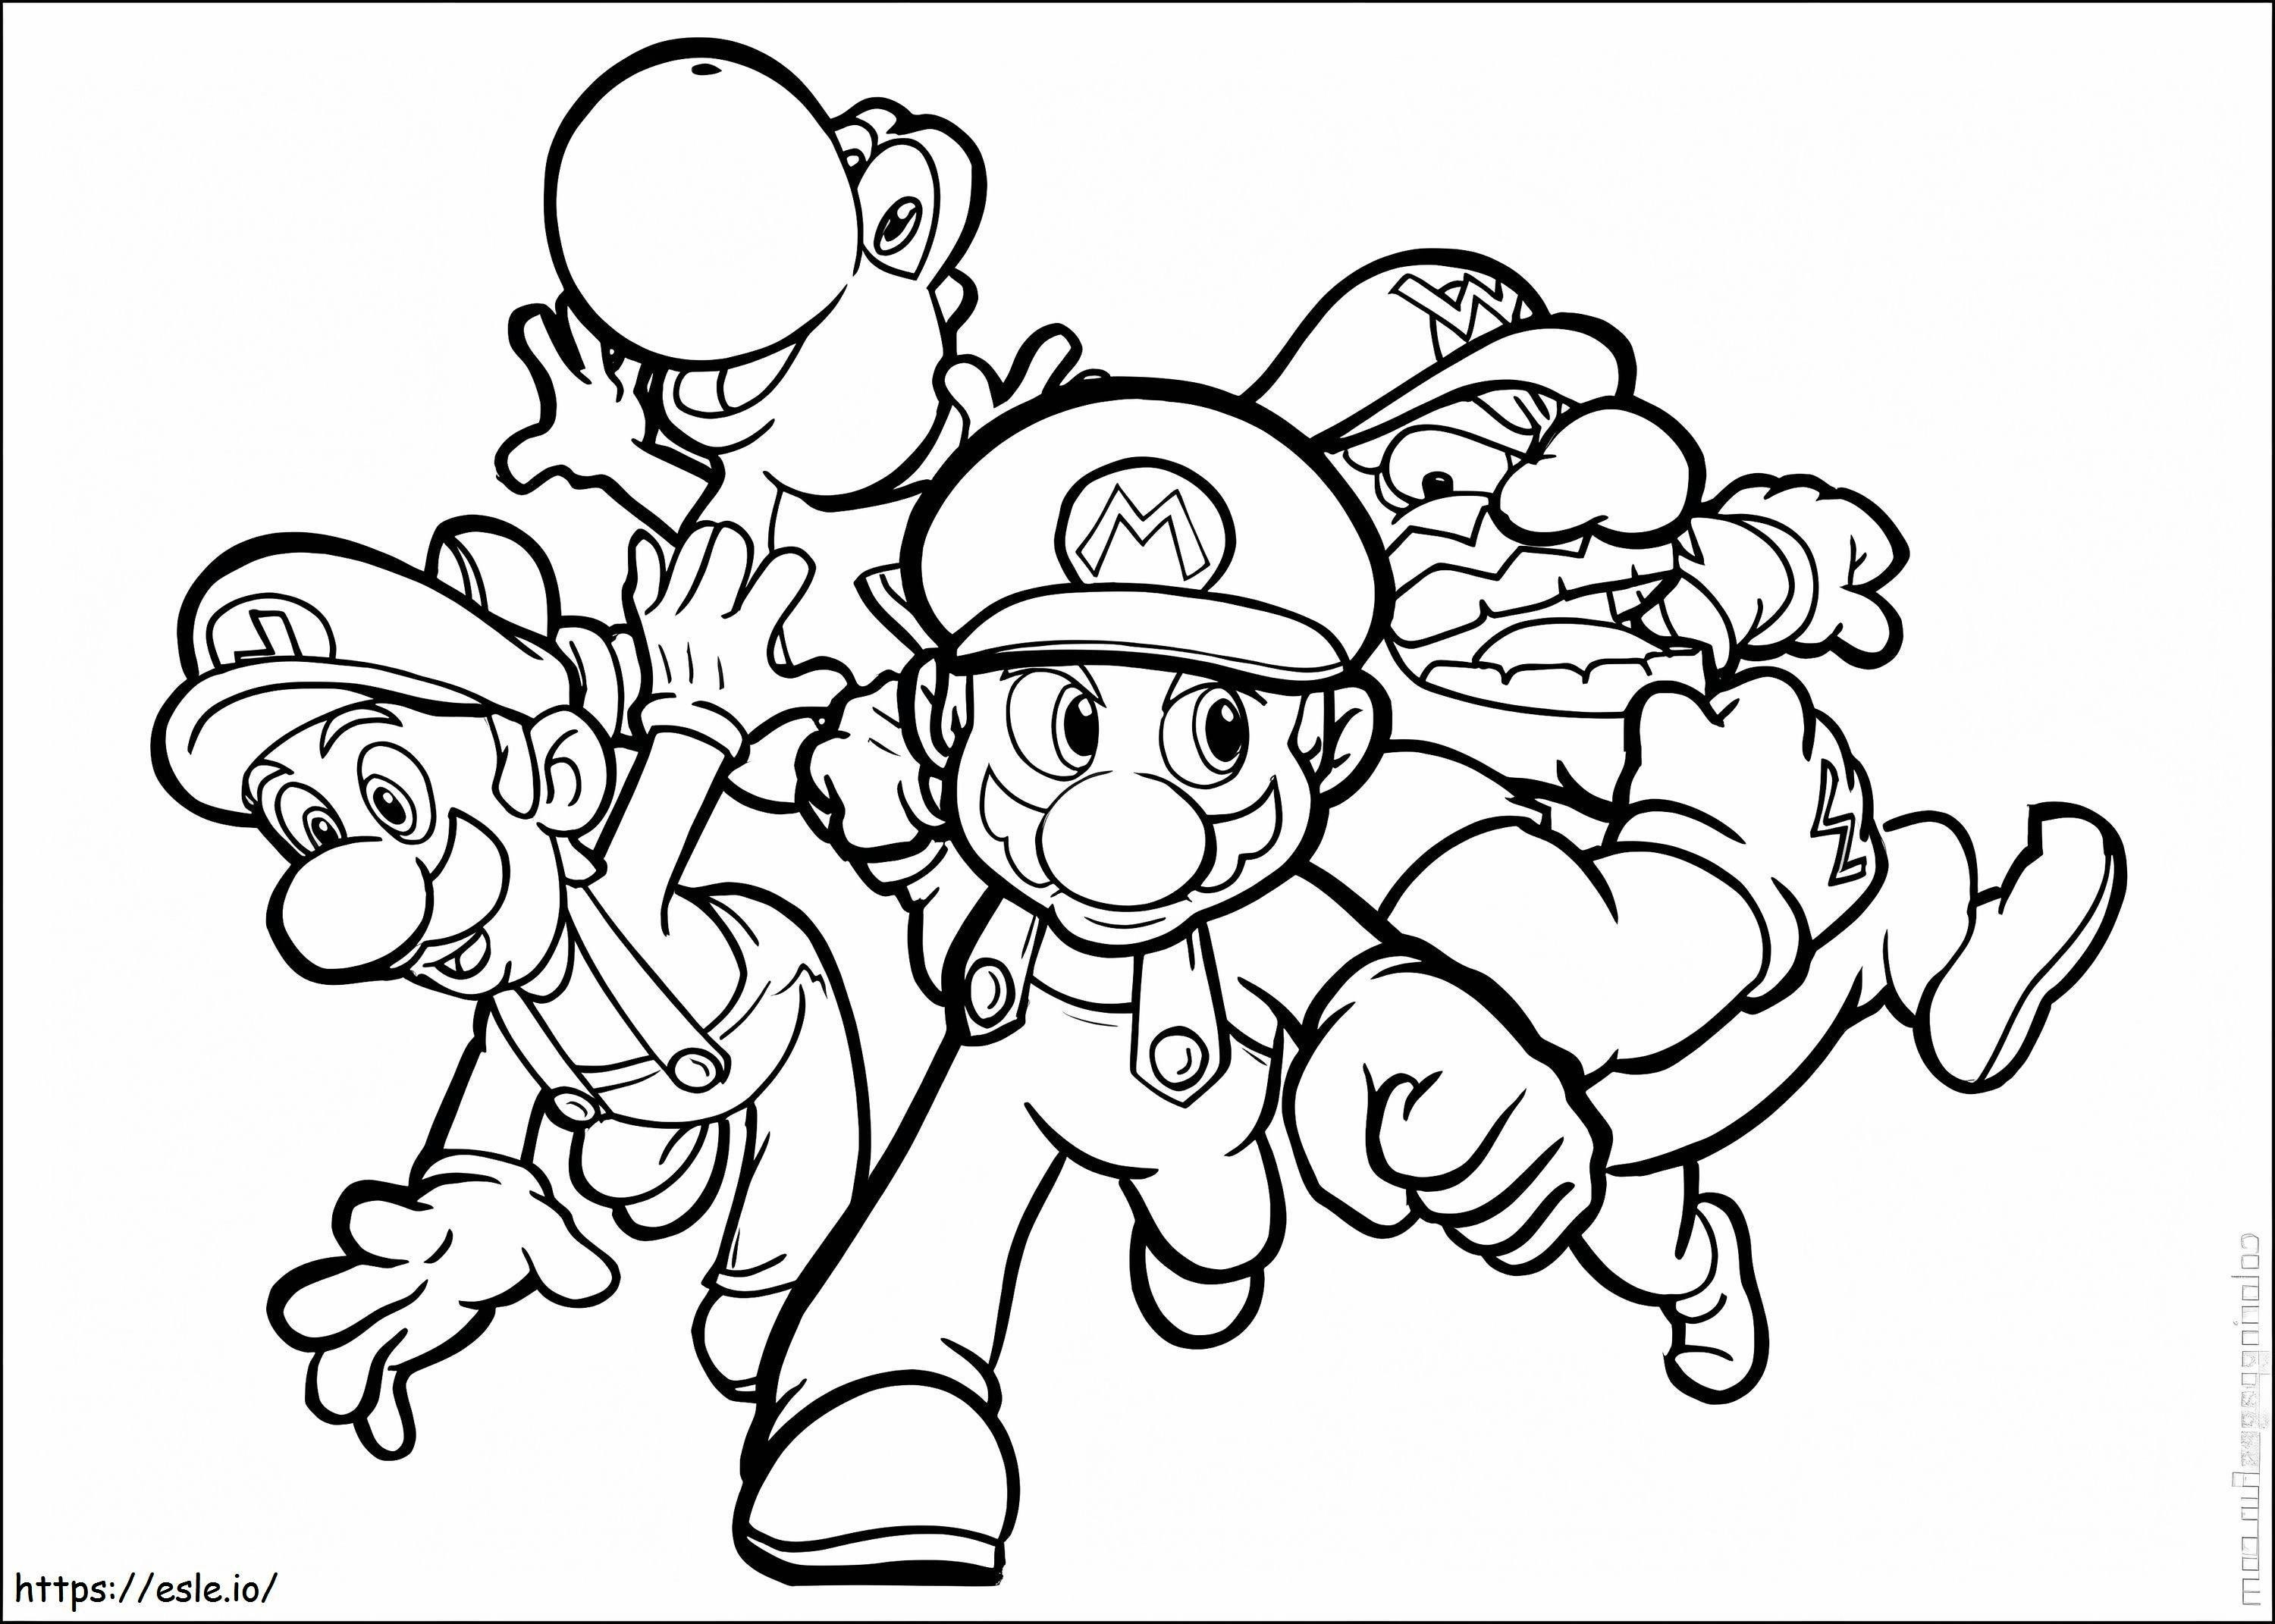 Luigi ve Arkadaşları Koşuyor boyama